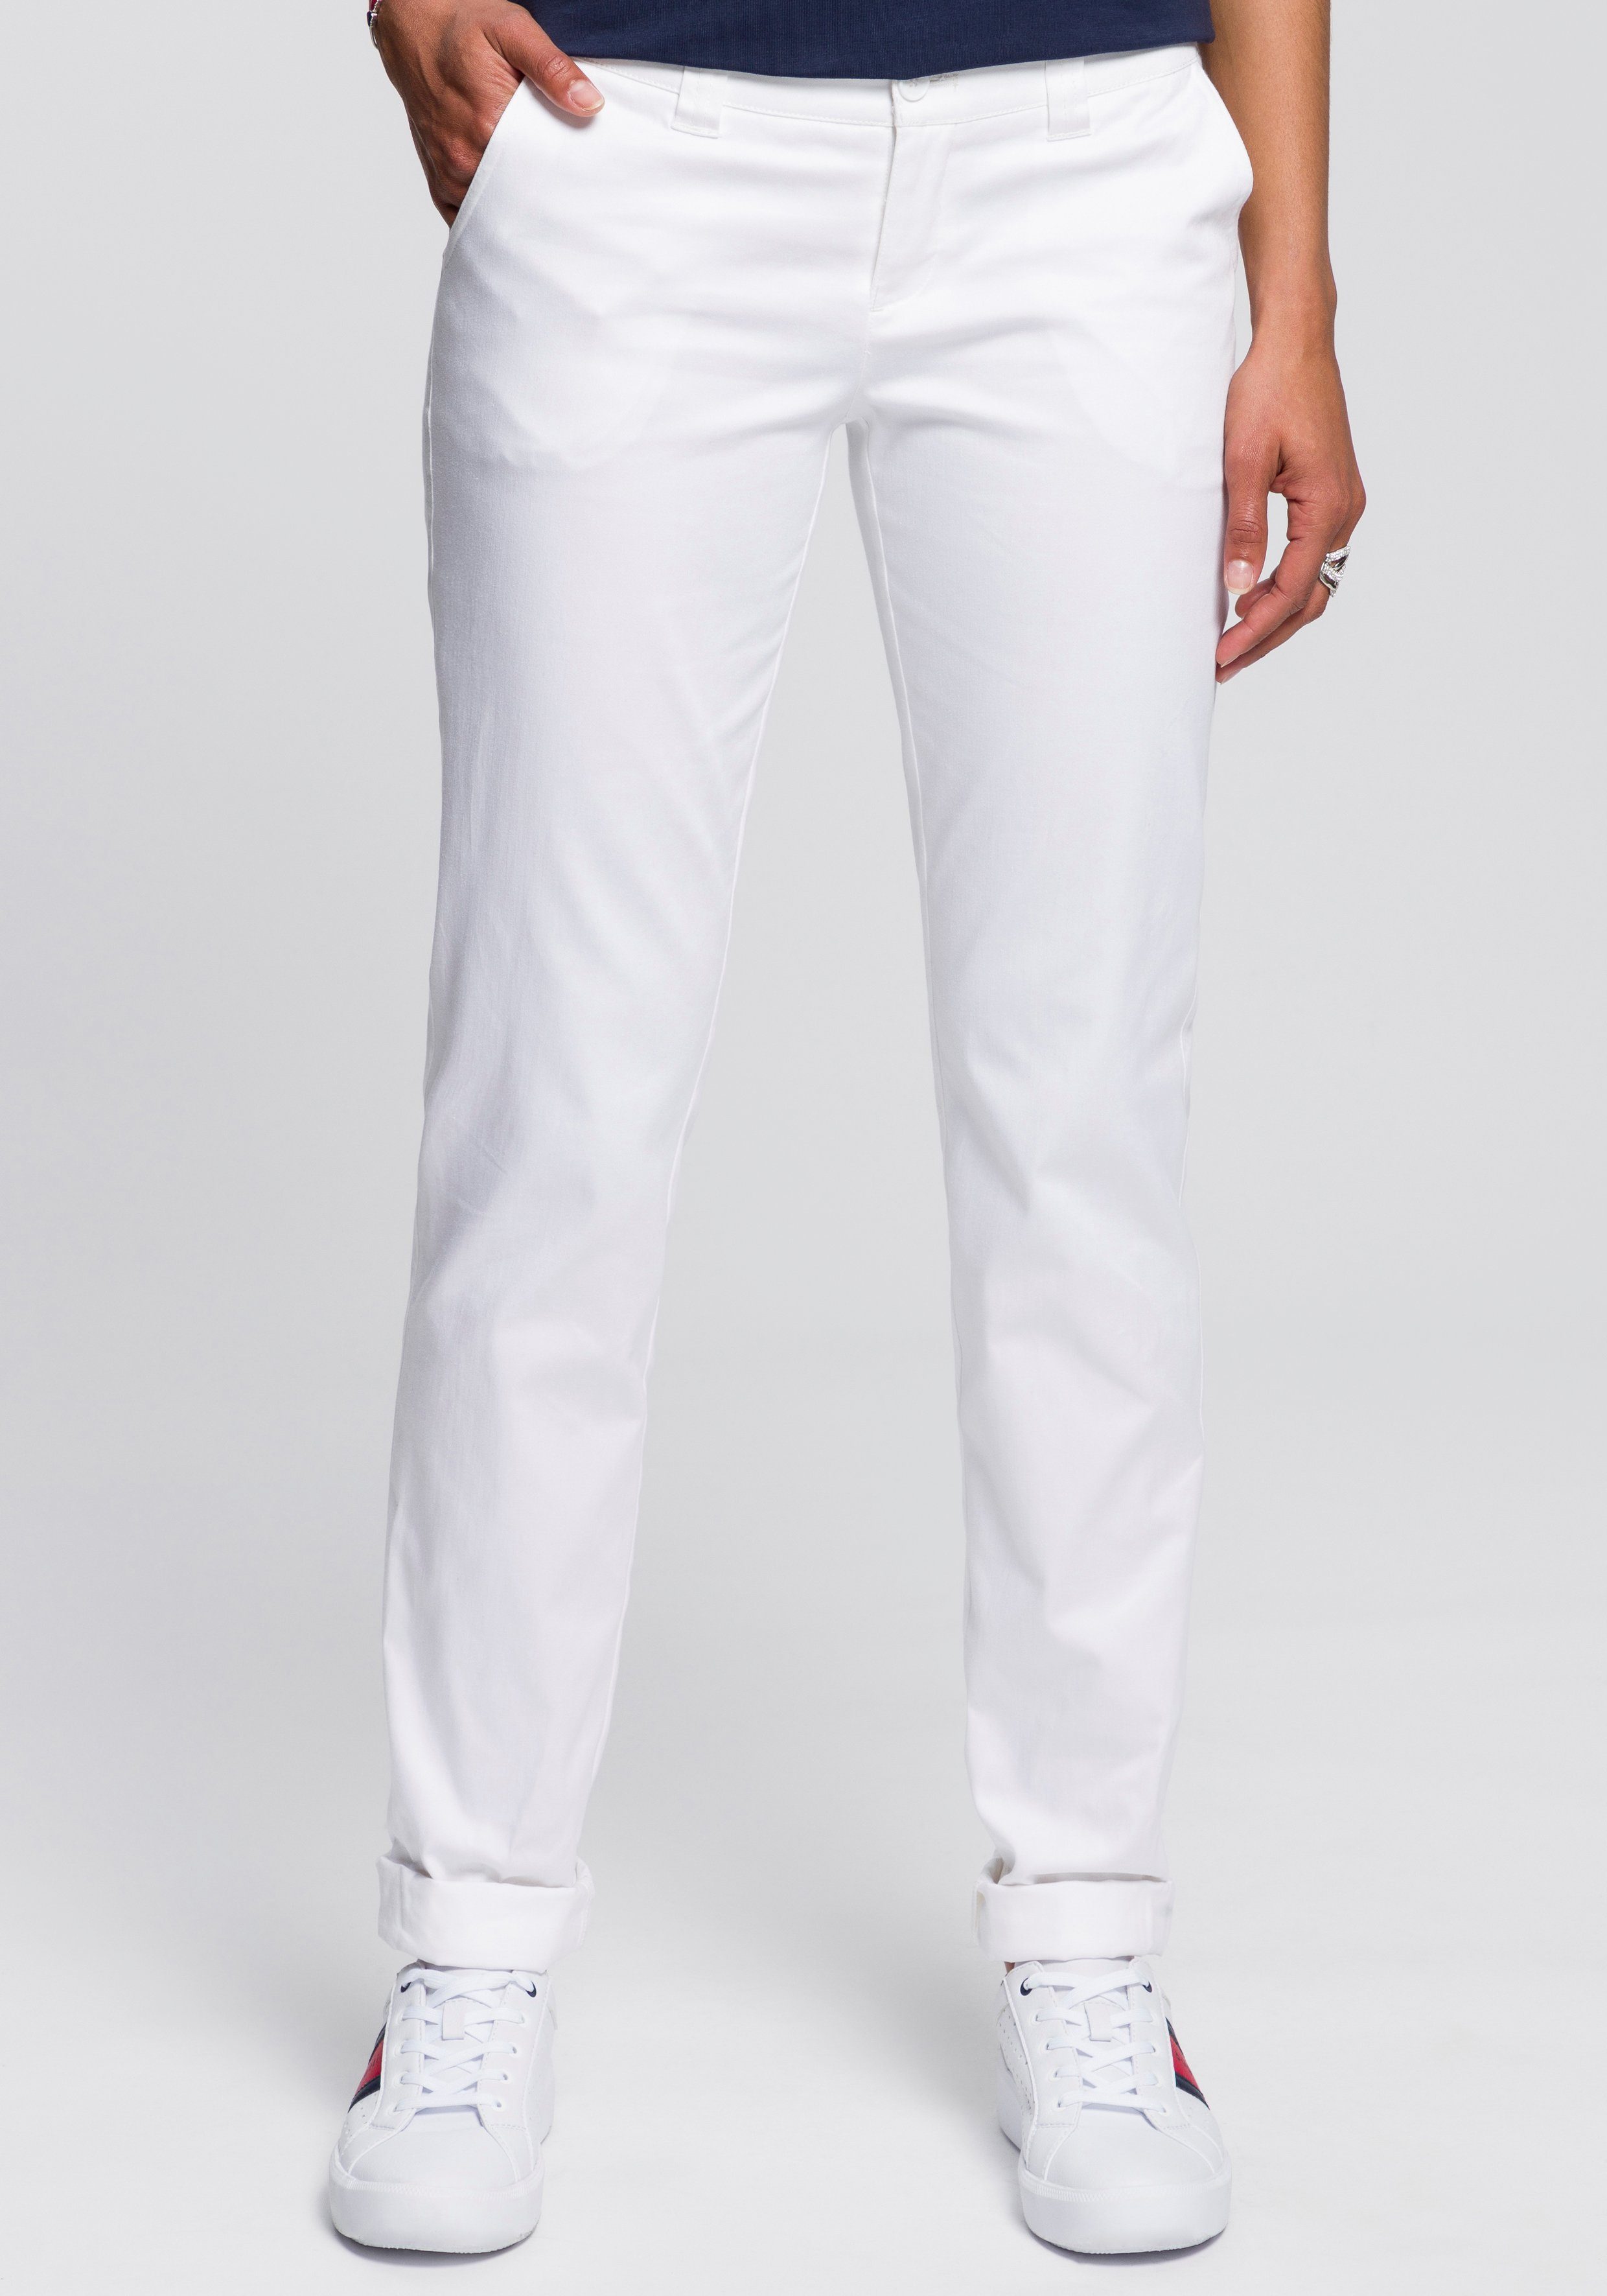 Weiße Stretchhosen für Damen online kaufen | OTTO